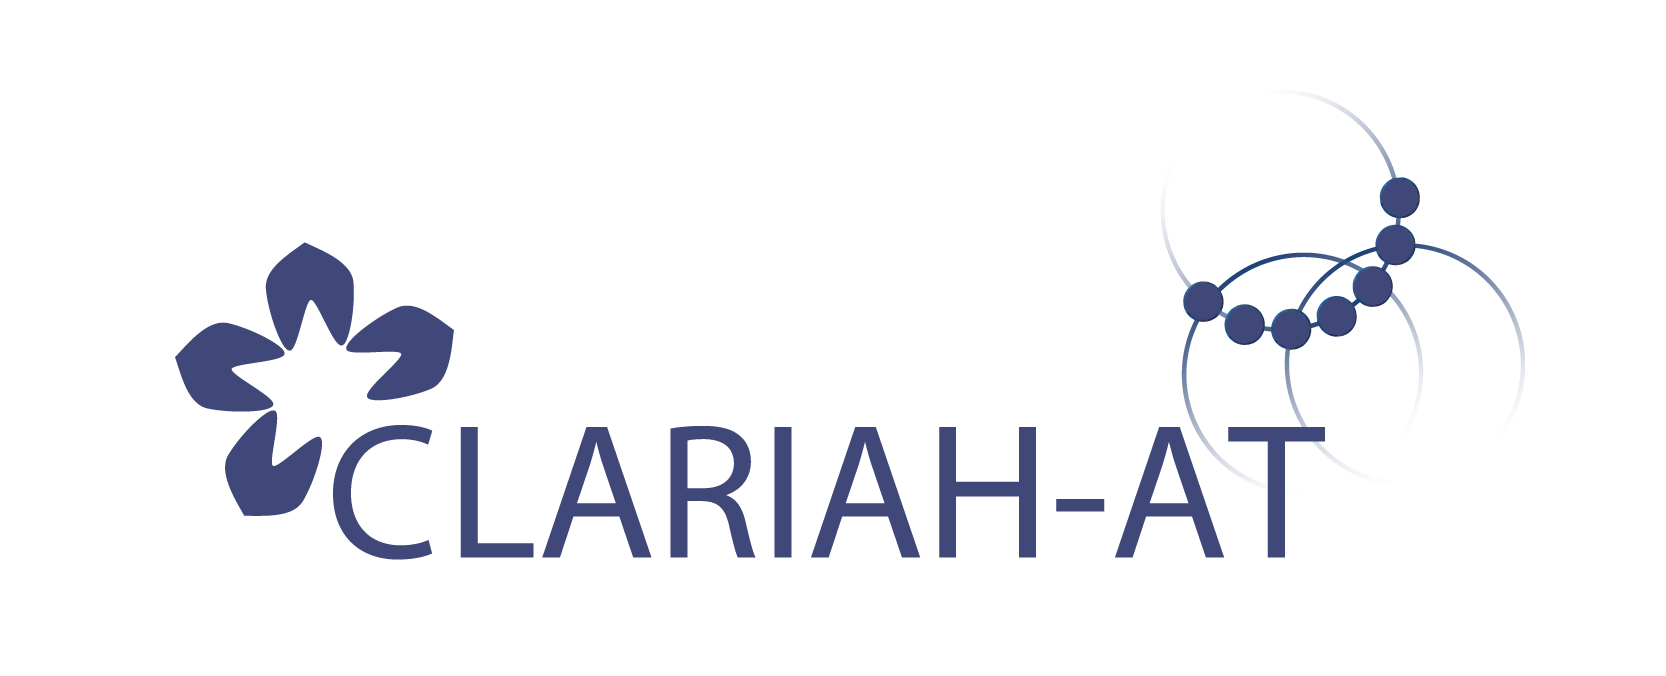 CLARIAH-AT